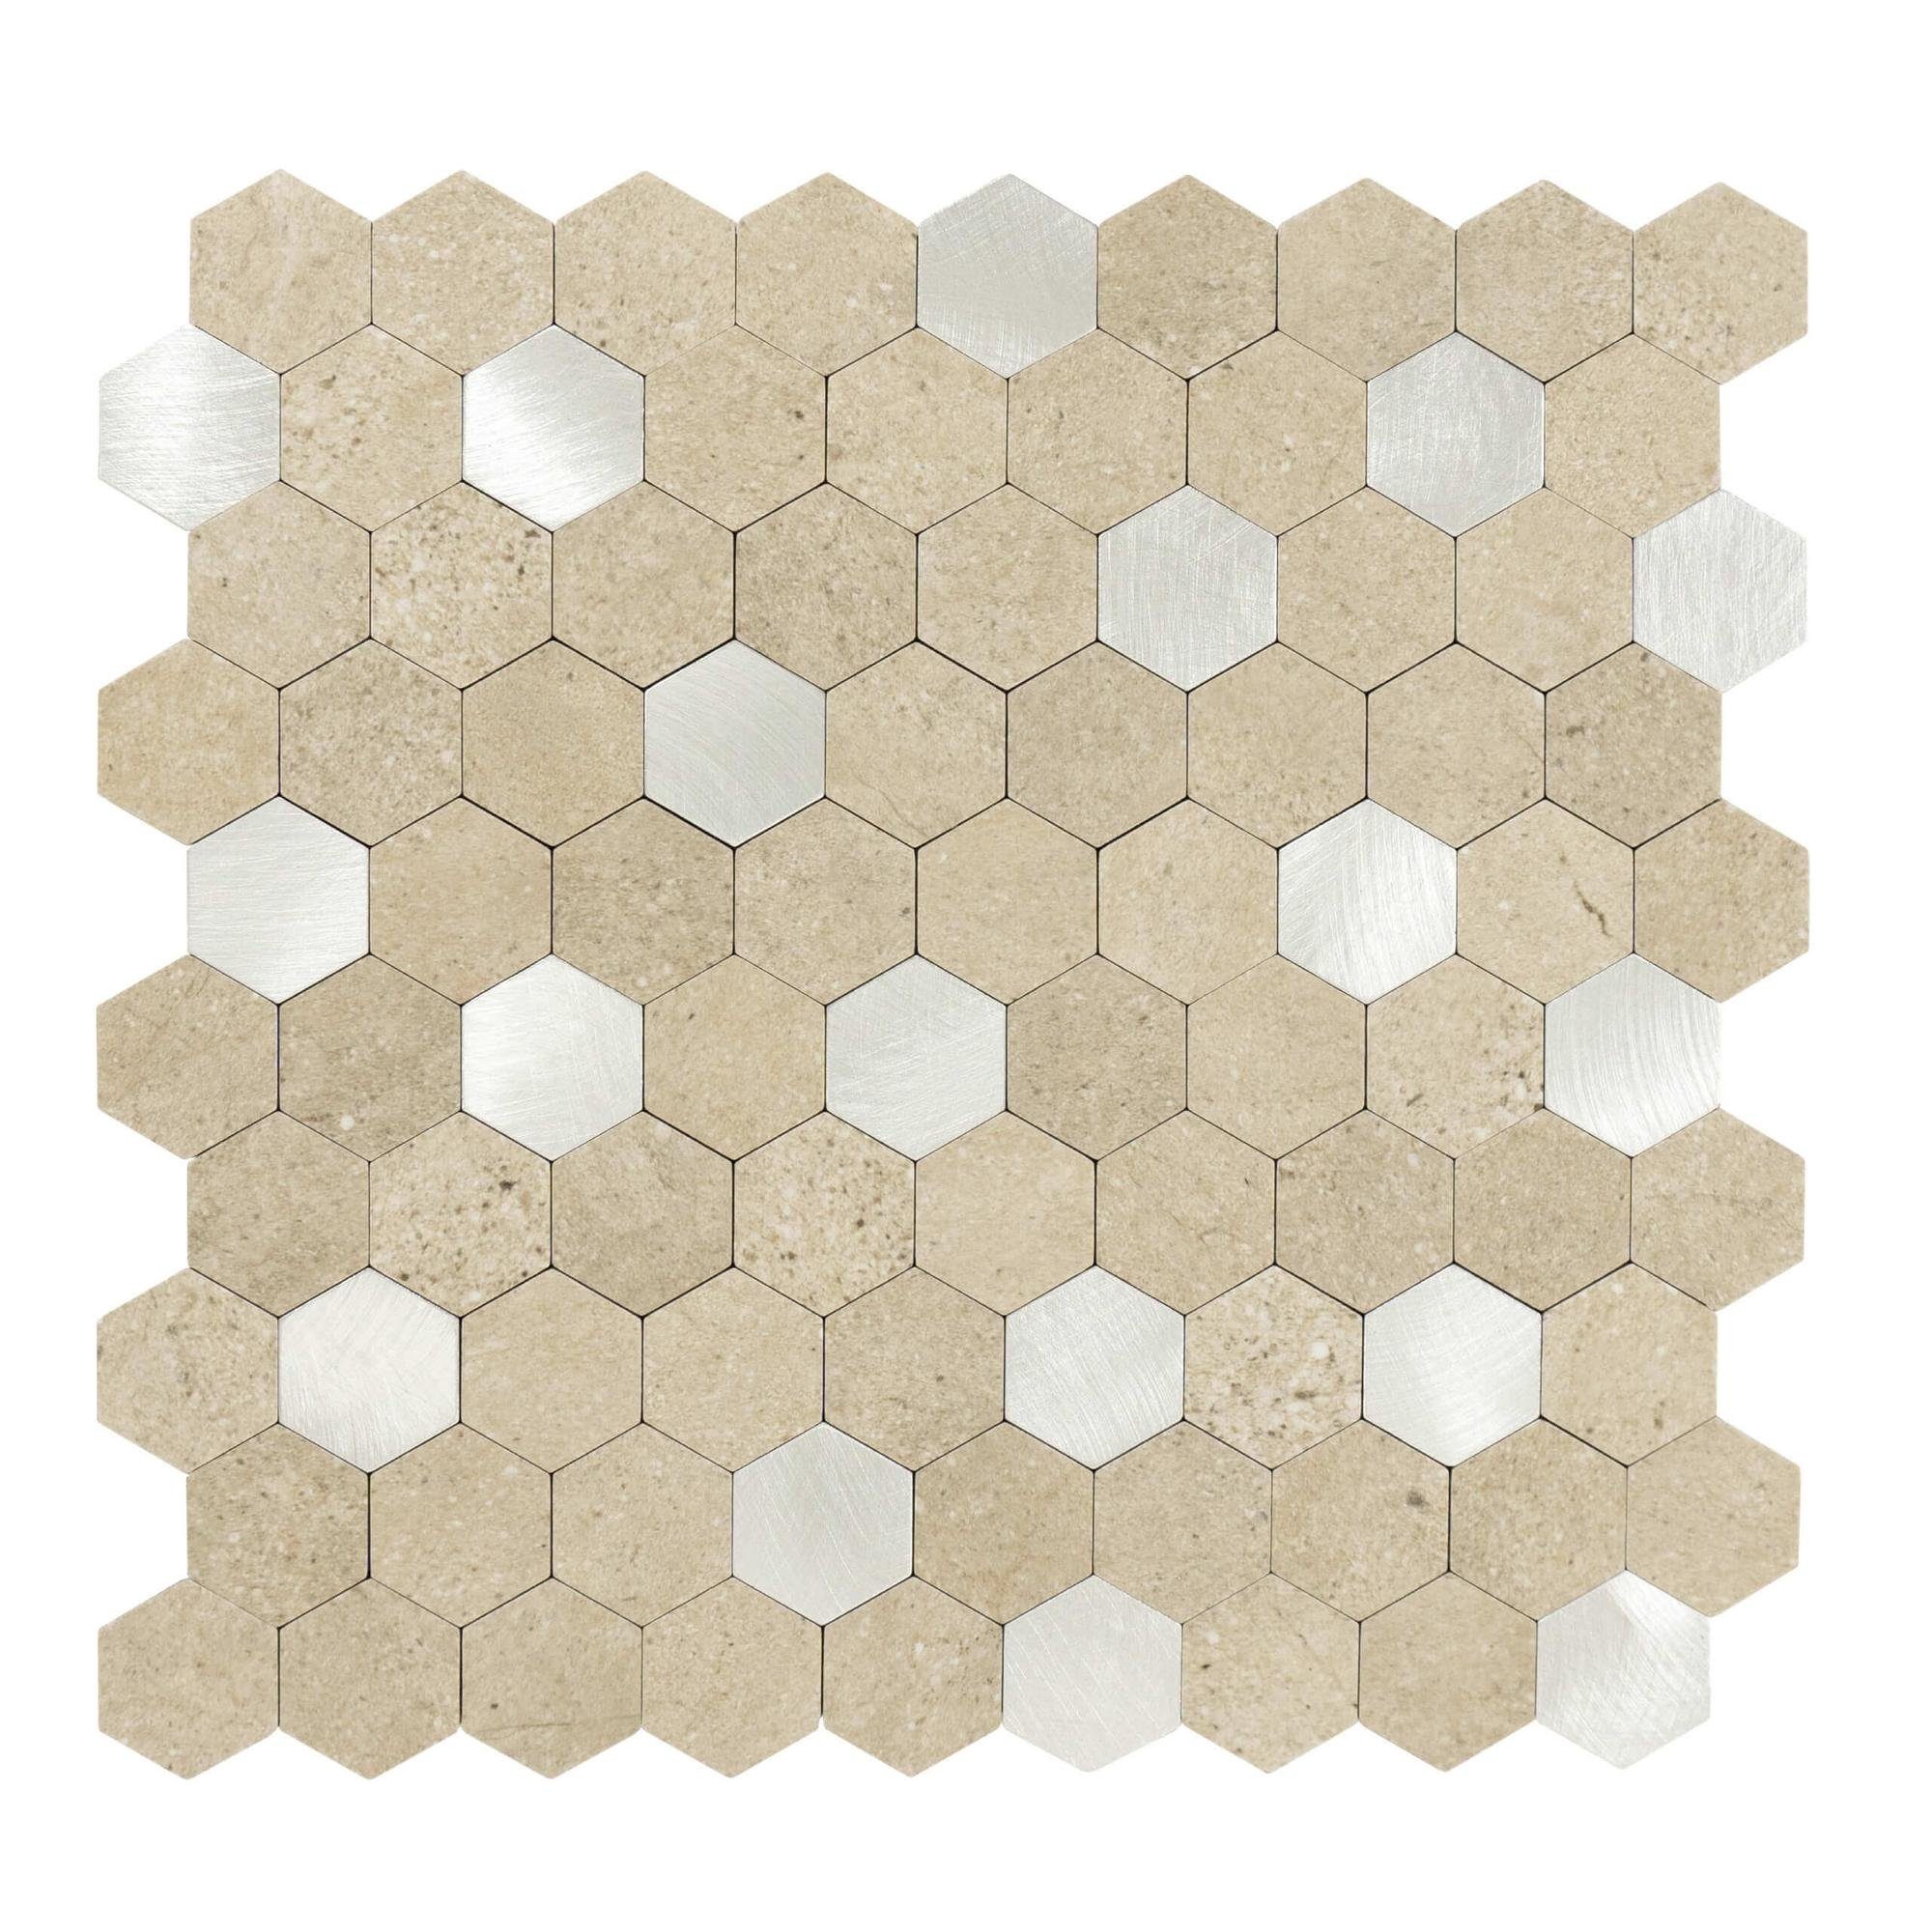 Dalsys Wandpaneel 0,88m² 11 Stück selbstklebend, (Sand Silber Hexagon, 11-tlg., Wandfliese) feuchtigskeitsbeständig, einfach montiert, hochwertiges Material